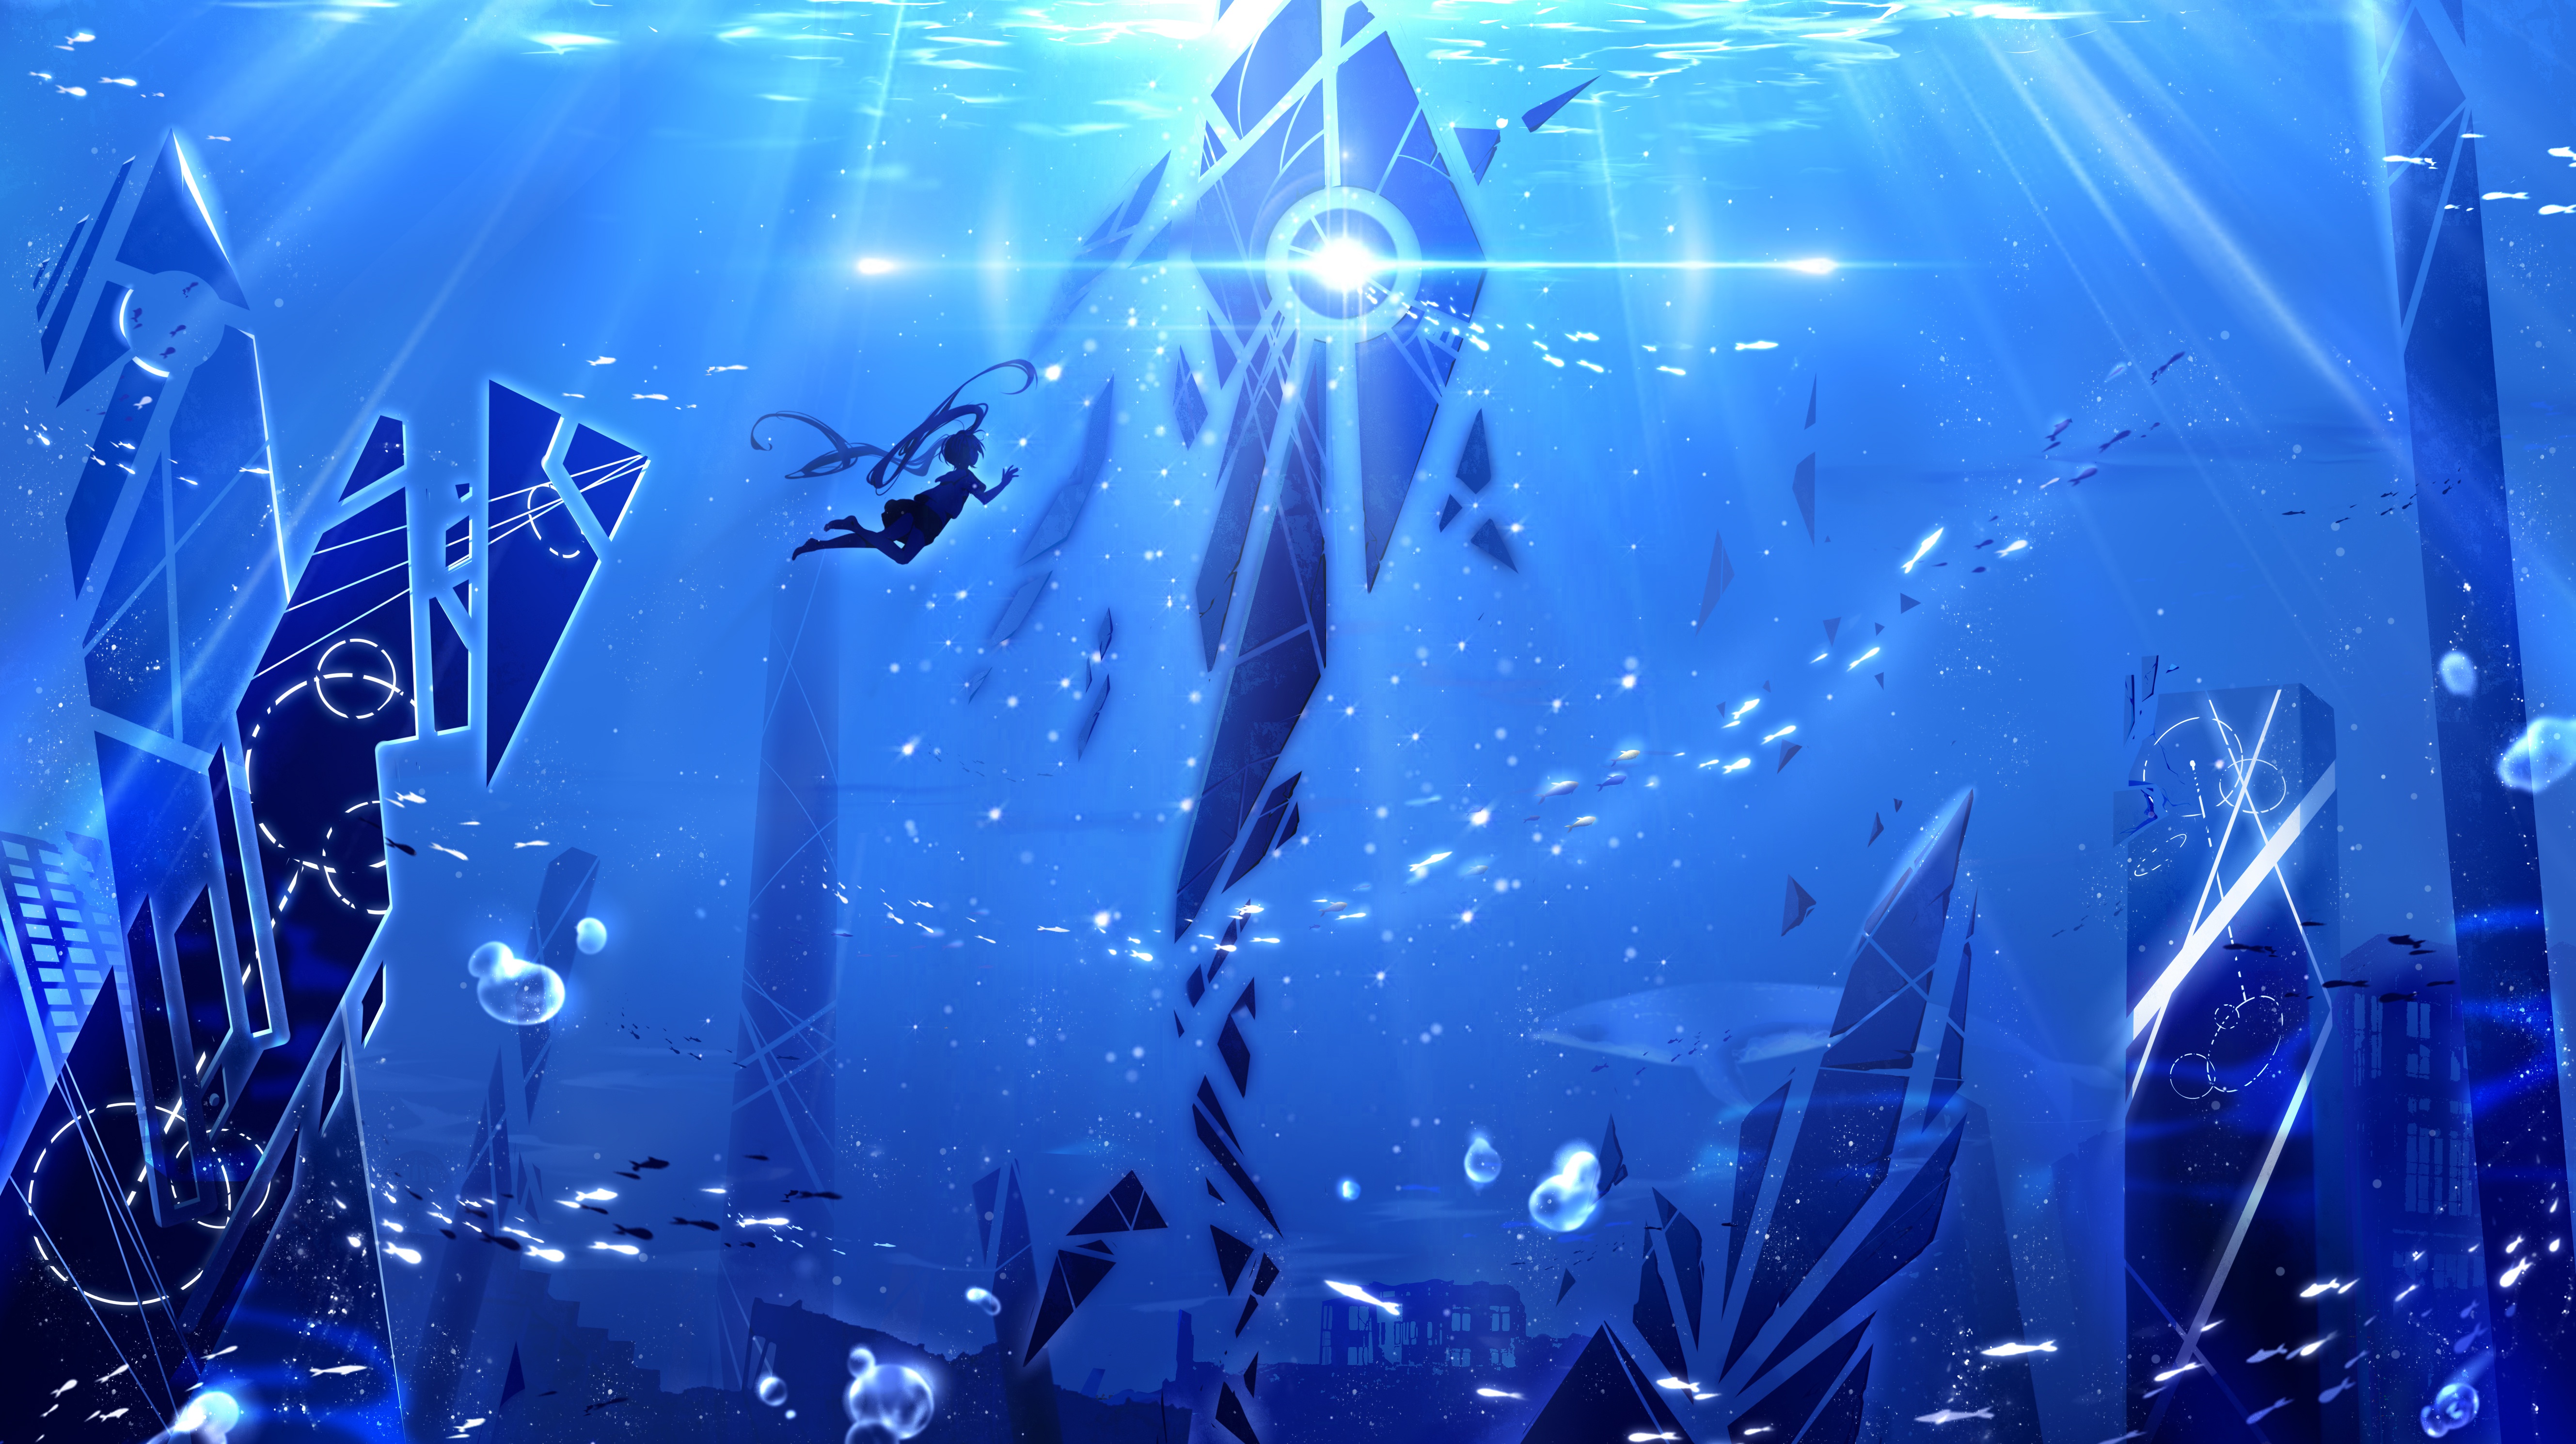 Hình nền Anime dưới nước đang đón chờ bạn khám phá! Với đủ loại nhân vật đáng yêu cùng khung cảnh dưới nước đầy huyền bí, bạn sẽ bị cuốn hút bởi sự đẹp lung linh của hình ảnh này. Hãy đến và tận hưởng trọn vẹn kiệt tác nghệ thuật Anime dưới nước ngay thôi!